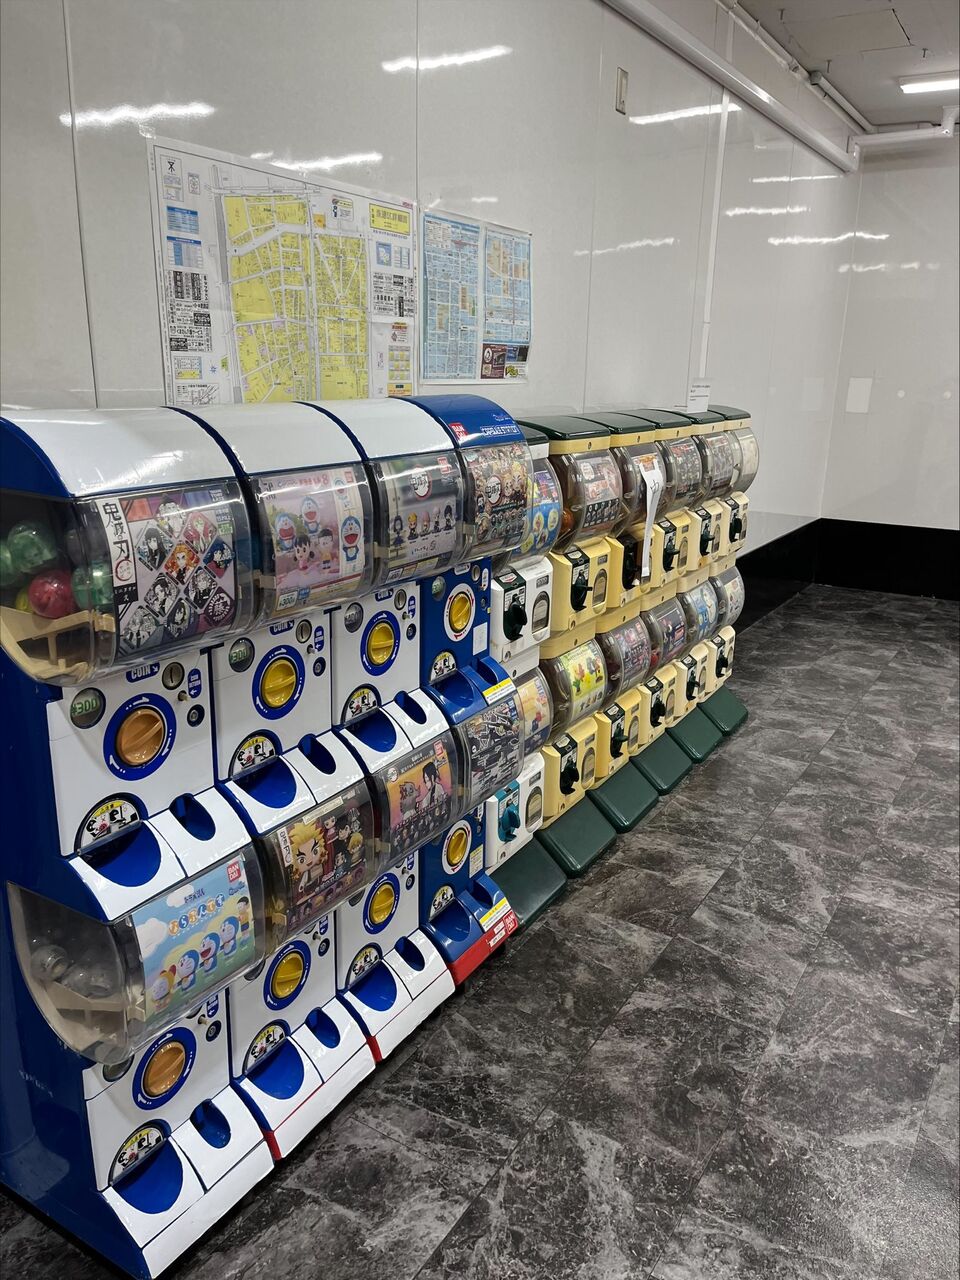 新世界散策 新世界にある スマートボール屋のスイーツ さんの店内が異様な空間になっていた 大阪つーしん 大阪市の地域情報サイト